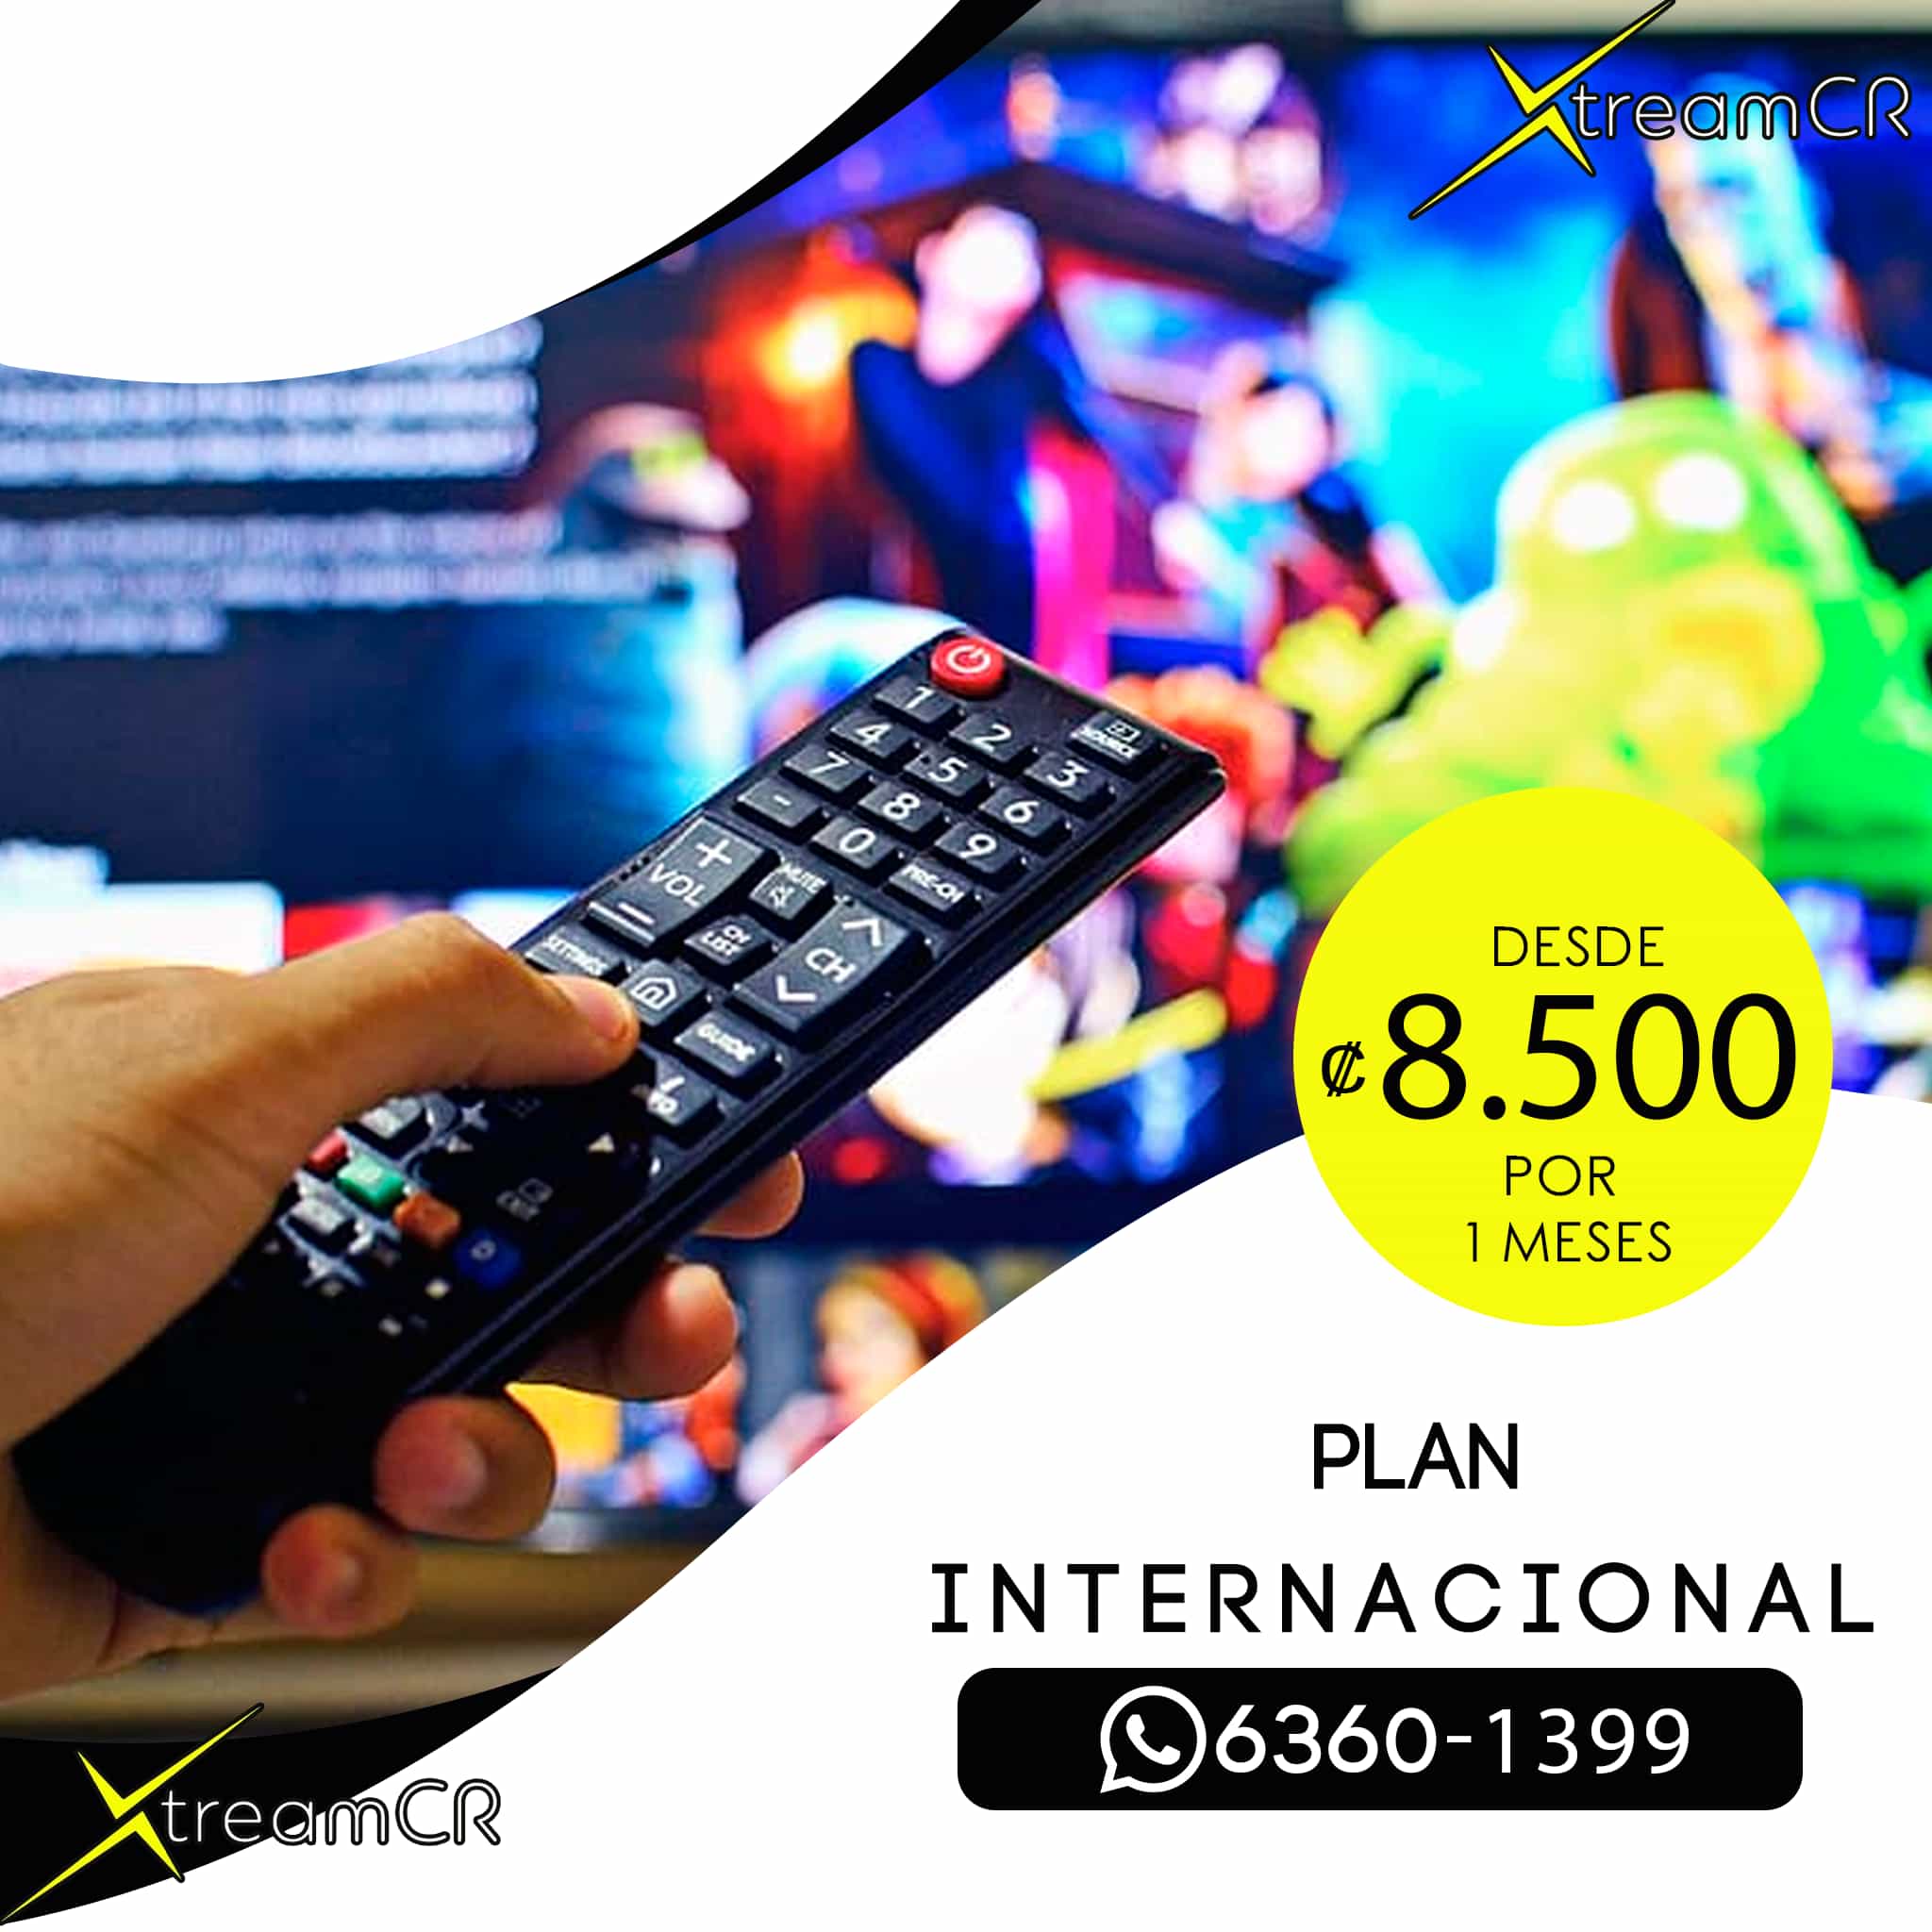 Bnner publicitario del Plan Internacional de IPTV Costa Rica